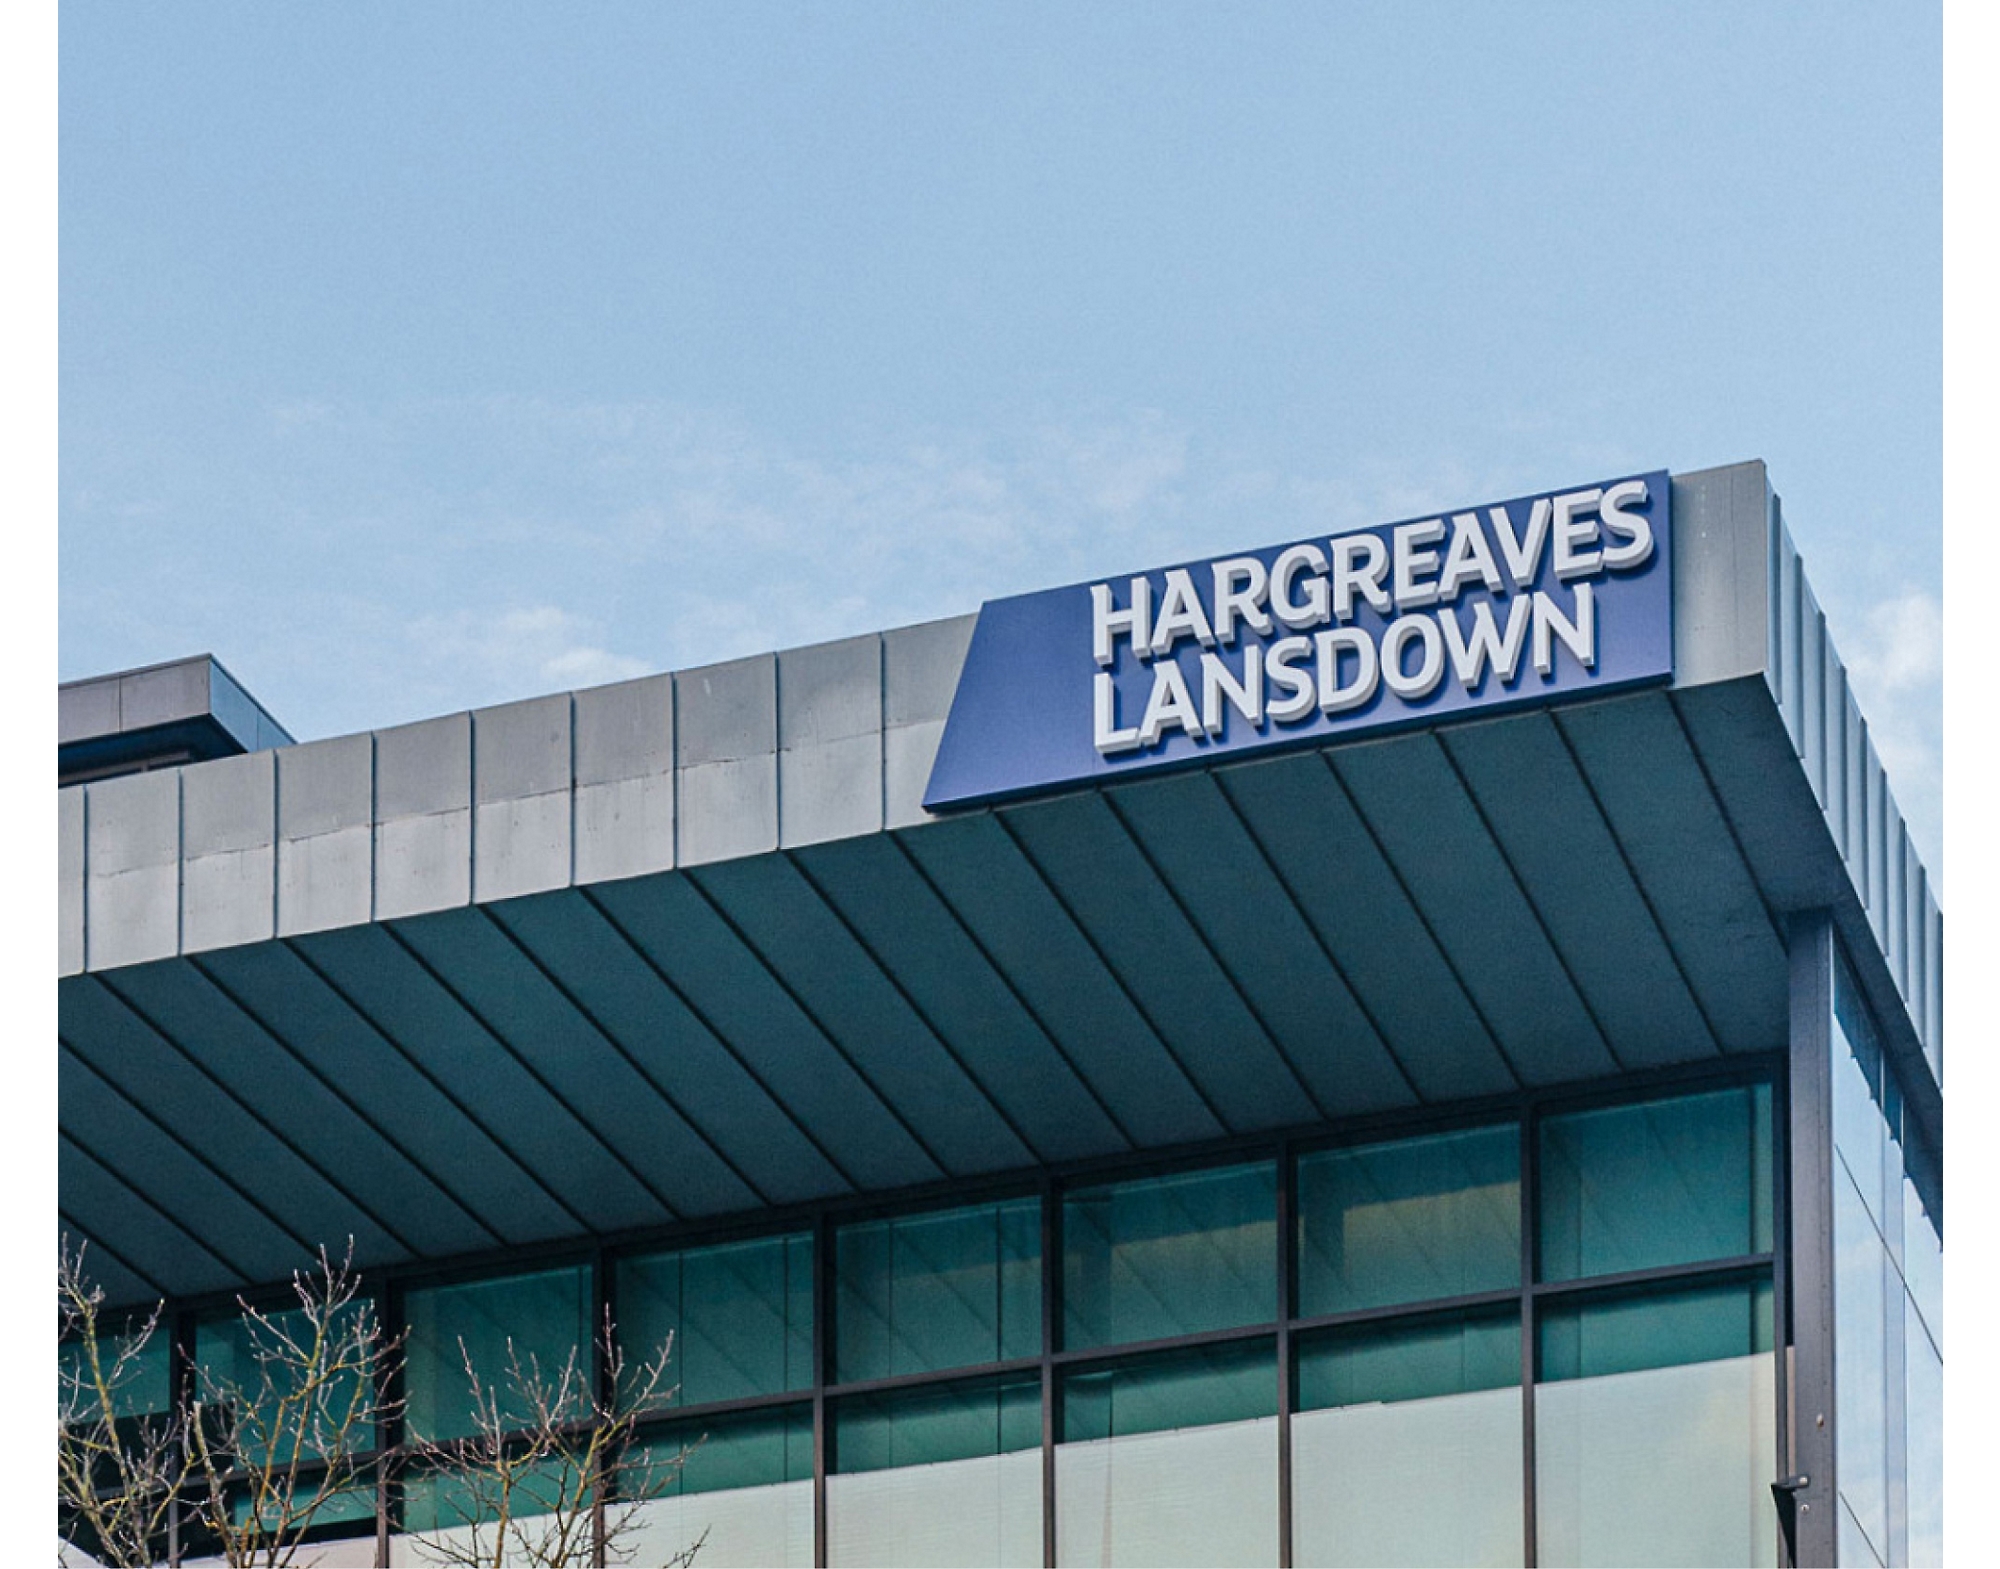 Tanda "hargreaves lansdown" di atas bangunan modern dengan langit cerah pada latar belakang.